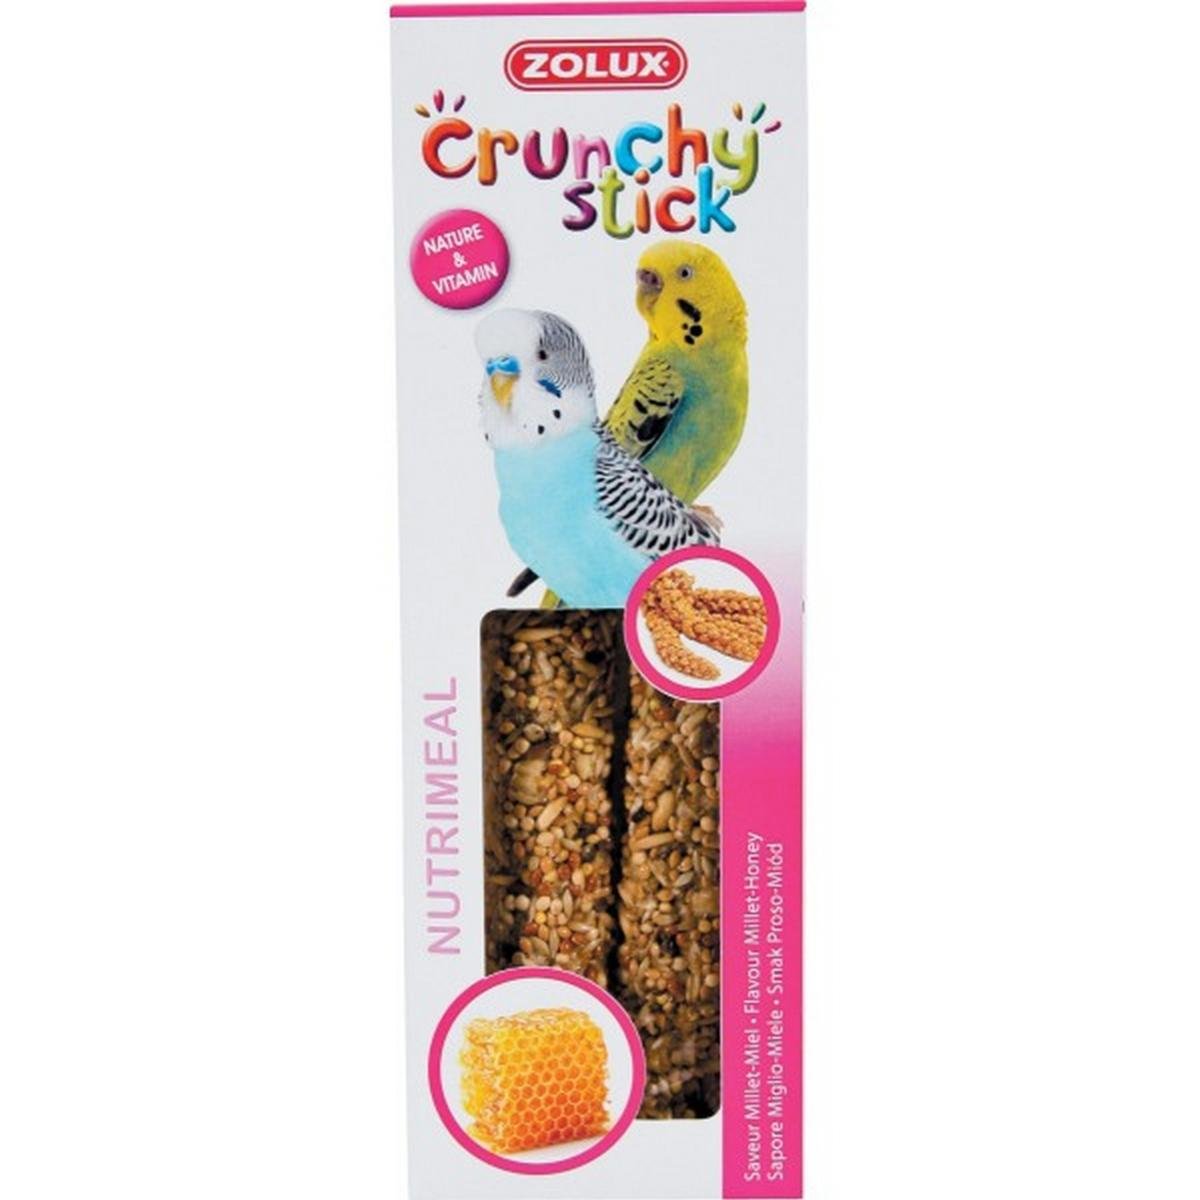 Zolux Crunchy Stick papuga mała proso/miód 85 g Dostawa GRATIS od 99 zł + super okazje